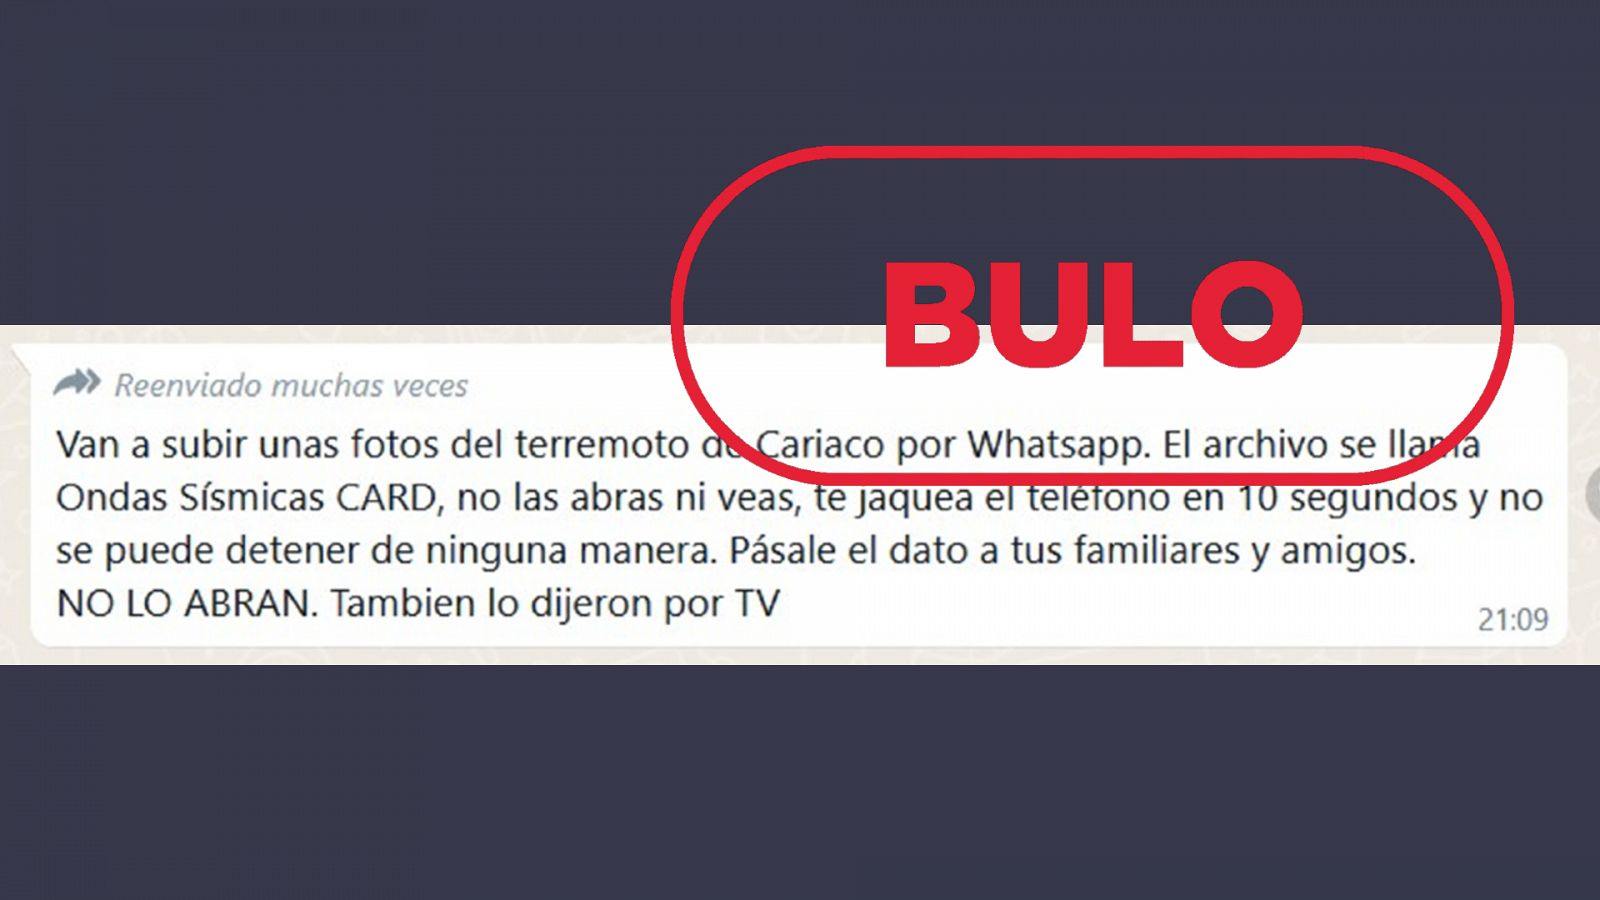 Captura del mensaje falso que circula por WhatsApp con el sello bulo en rojo.